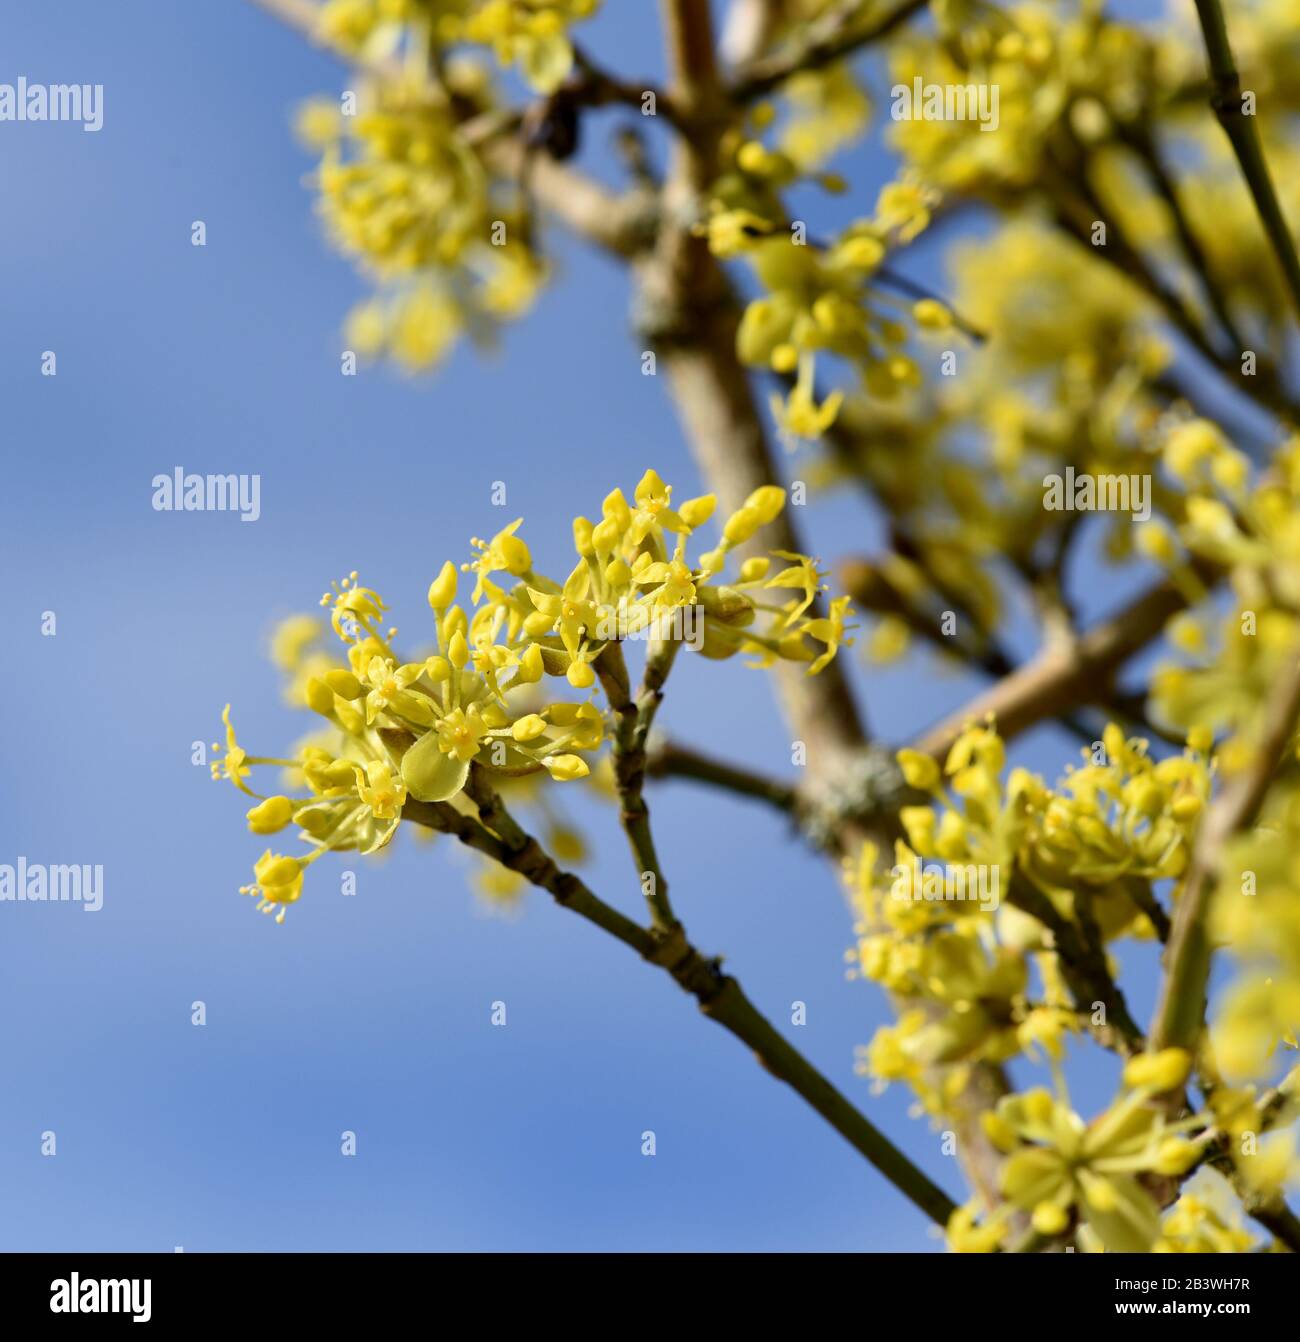 Kornelkirsche, Cornus mas, ist Busch mit gelben Blueten der im Spaeten Winter Bleht. Cornelian Kirsche, Cornus mas, ist ein Busch mit gelben Blumen, die Stockfoto